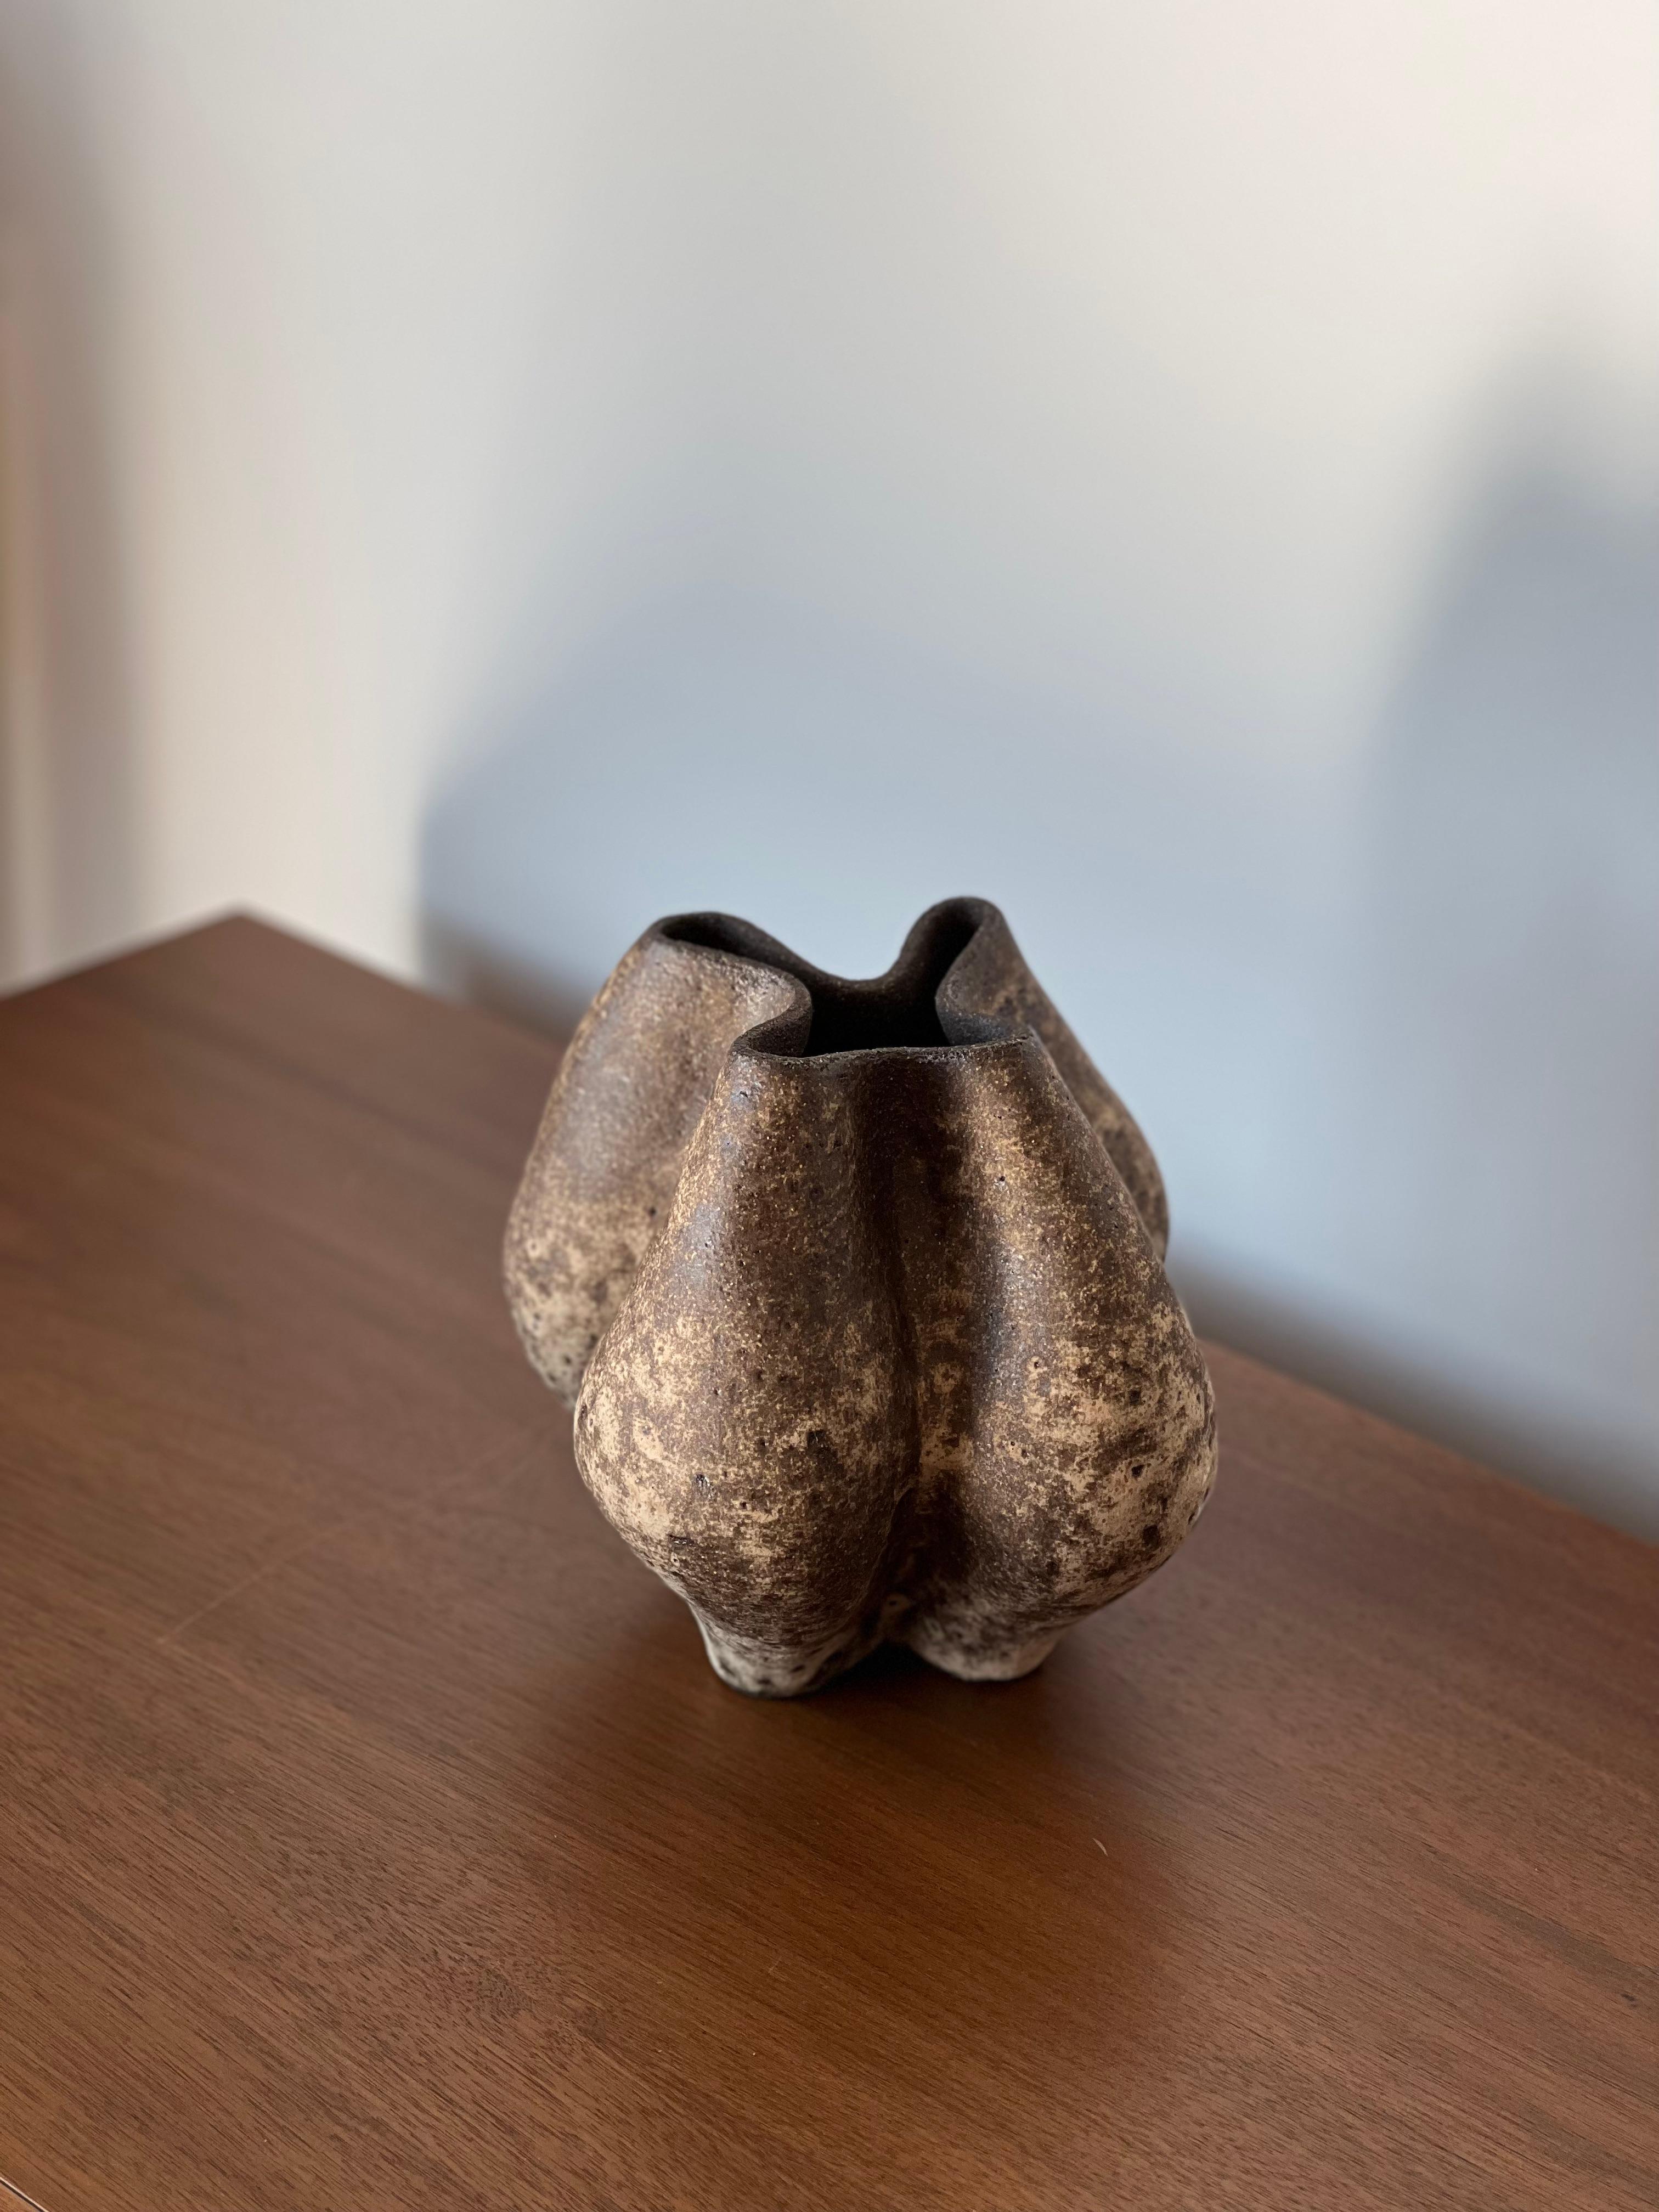 Vase anatolien 5 de Güler Elçi
Dimensions : L 20,3 x P 20,3 x H 21,5 cm.
Matériaux : Grès Céramique.

Güler Elçi est une artiste céramiste basée à Istanbul. À la lumière de sa carrière d'ingénieur, elle considère la céramique comme un matériau et